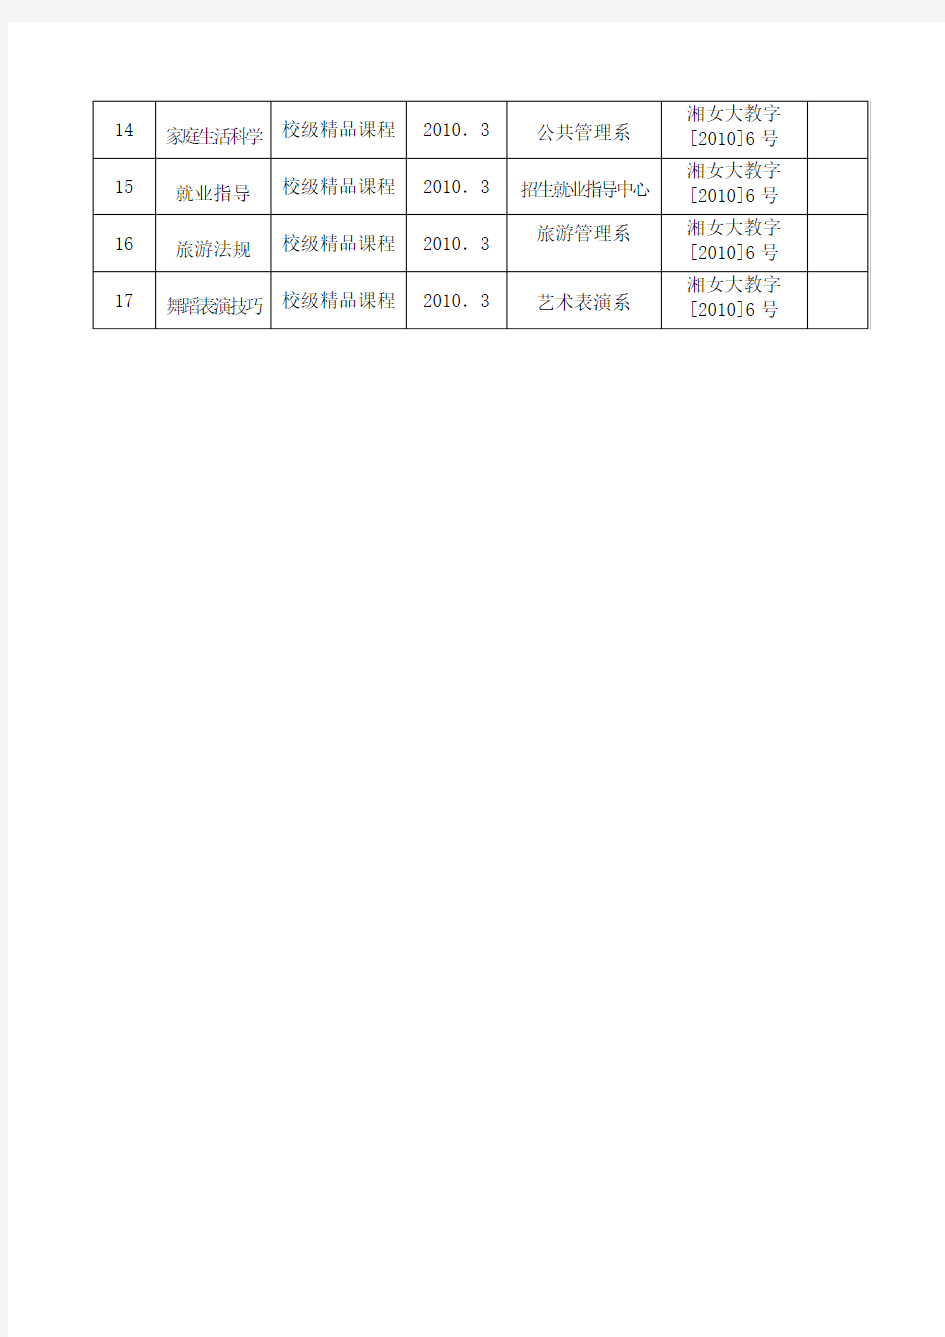 湖南女子学院校级精品课程一览表